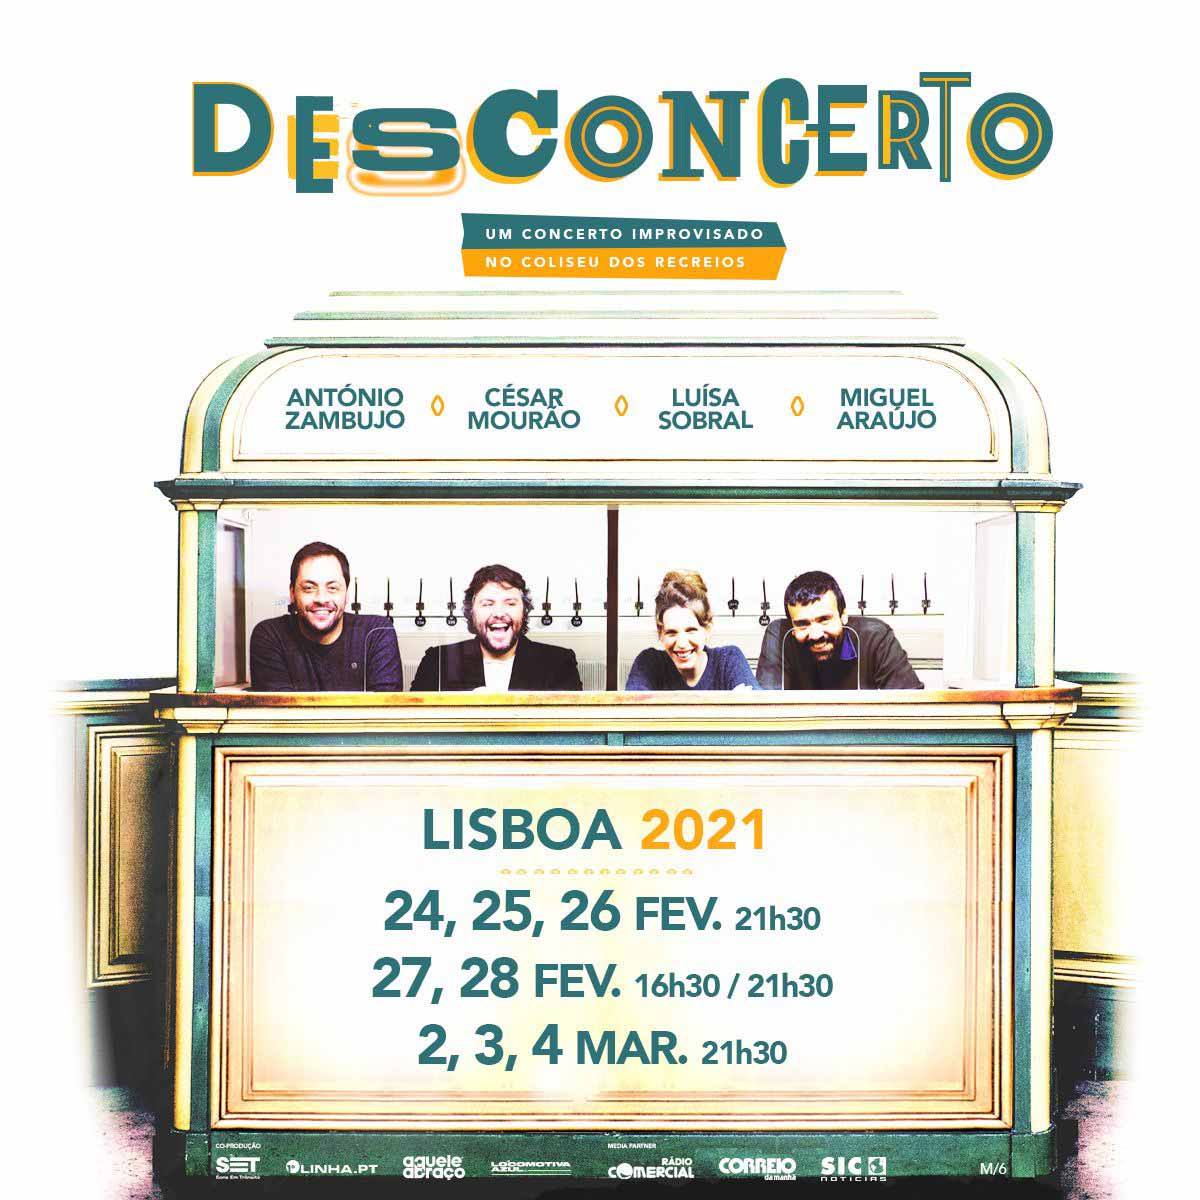 Desconcerto - Lisboa (ADIADO)